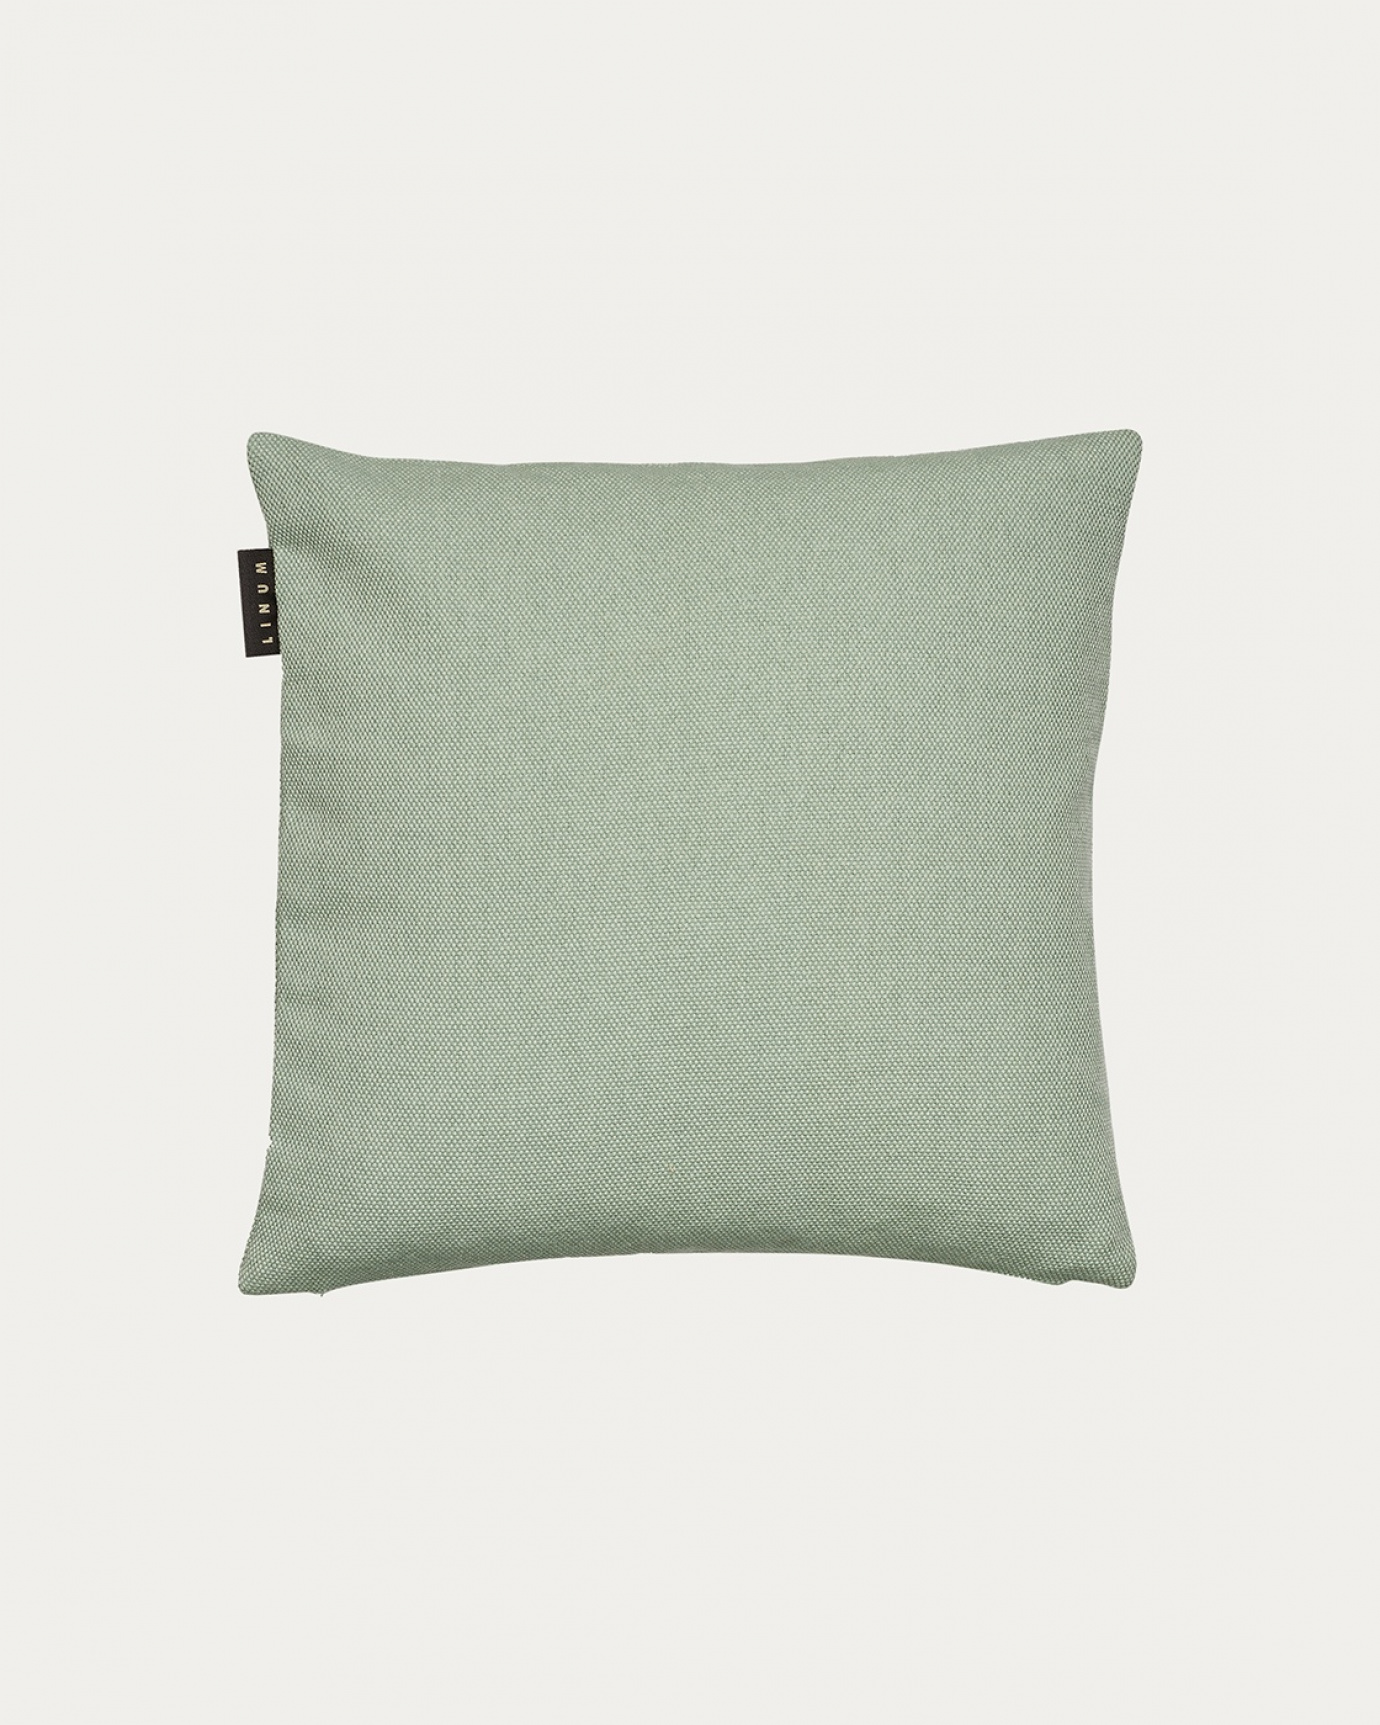 Produktbild helles eisgrün PEPPER Kissenhülle aus weicher Baumwolle von LINUM DESIGN. Einfach zu waschen und langlebig für Generationen. Größe 40x40 cm.